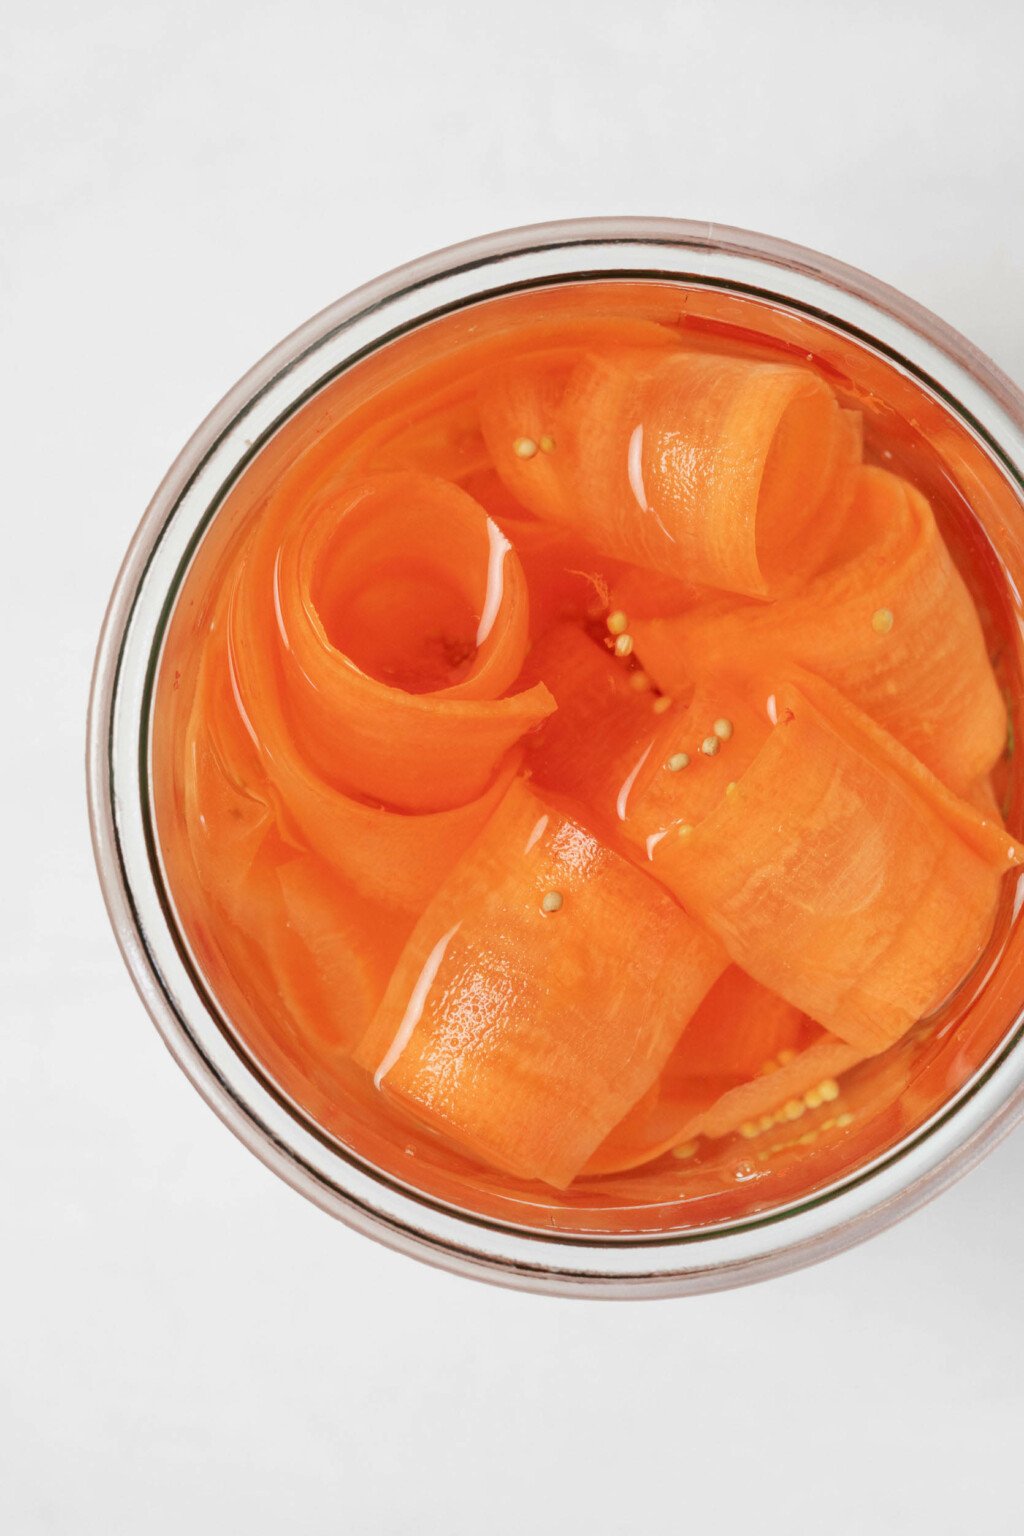 Μια εικόνα από πάνω από ένα βάζο γεμάτο με κορδέλες καρότου τουρσί.